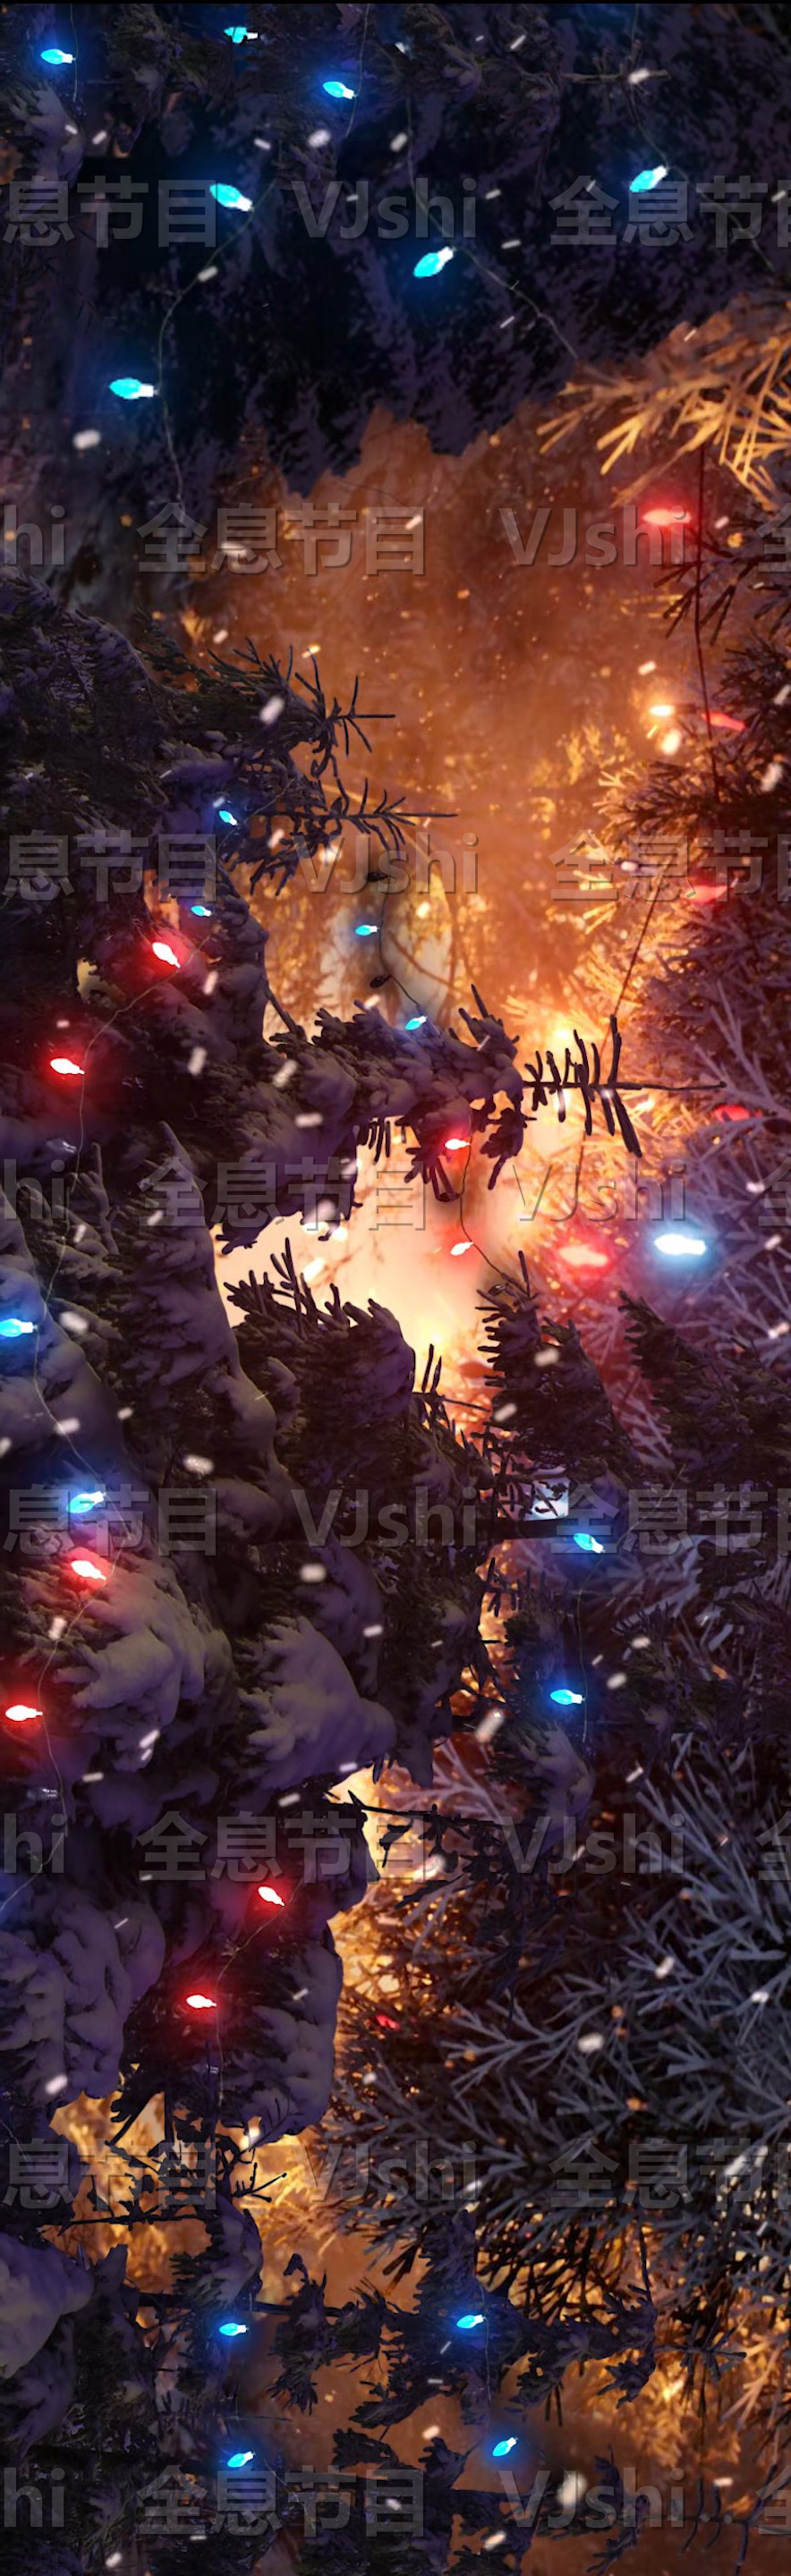 原创8K圣诞节背景平安夜背景